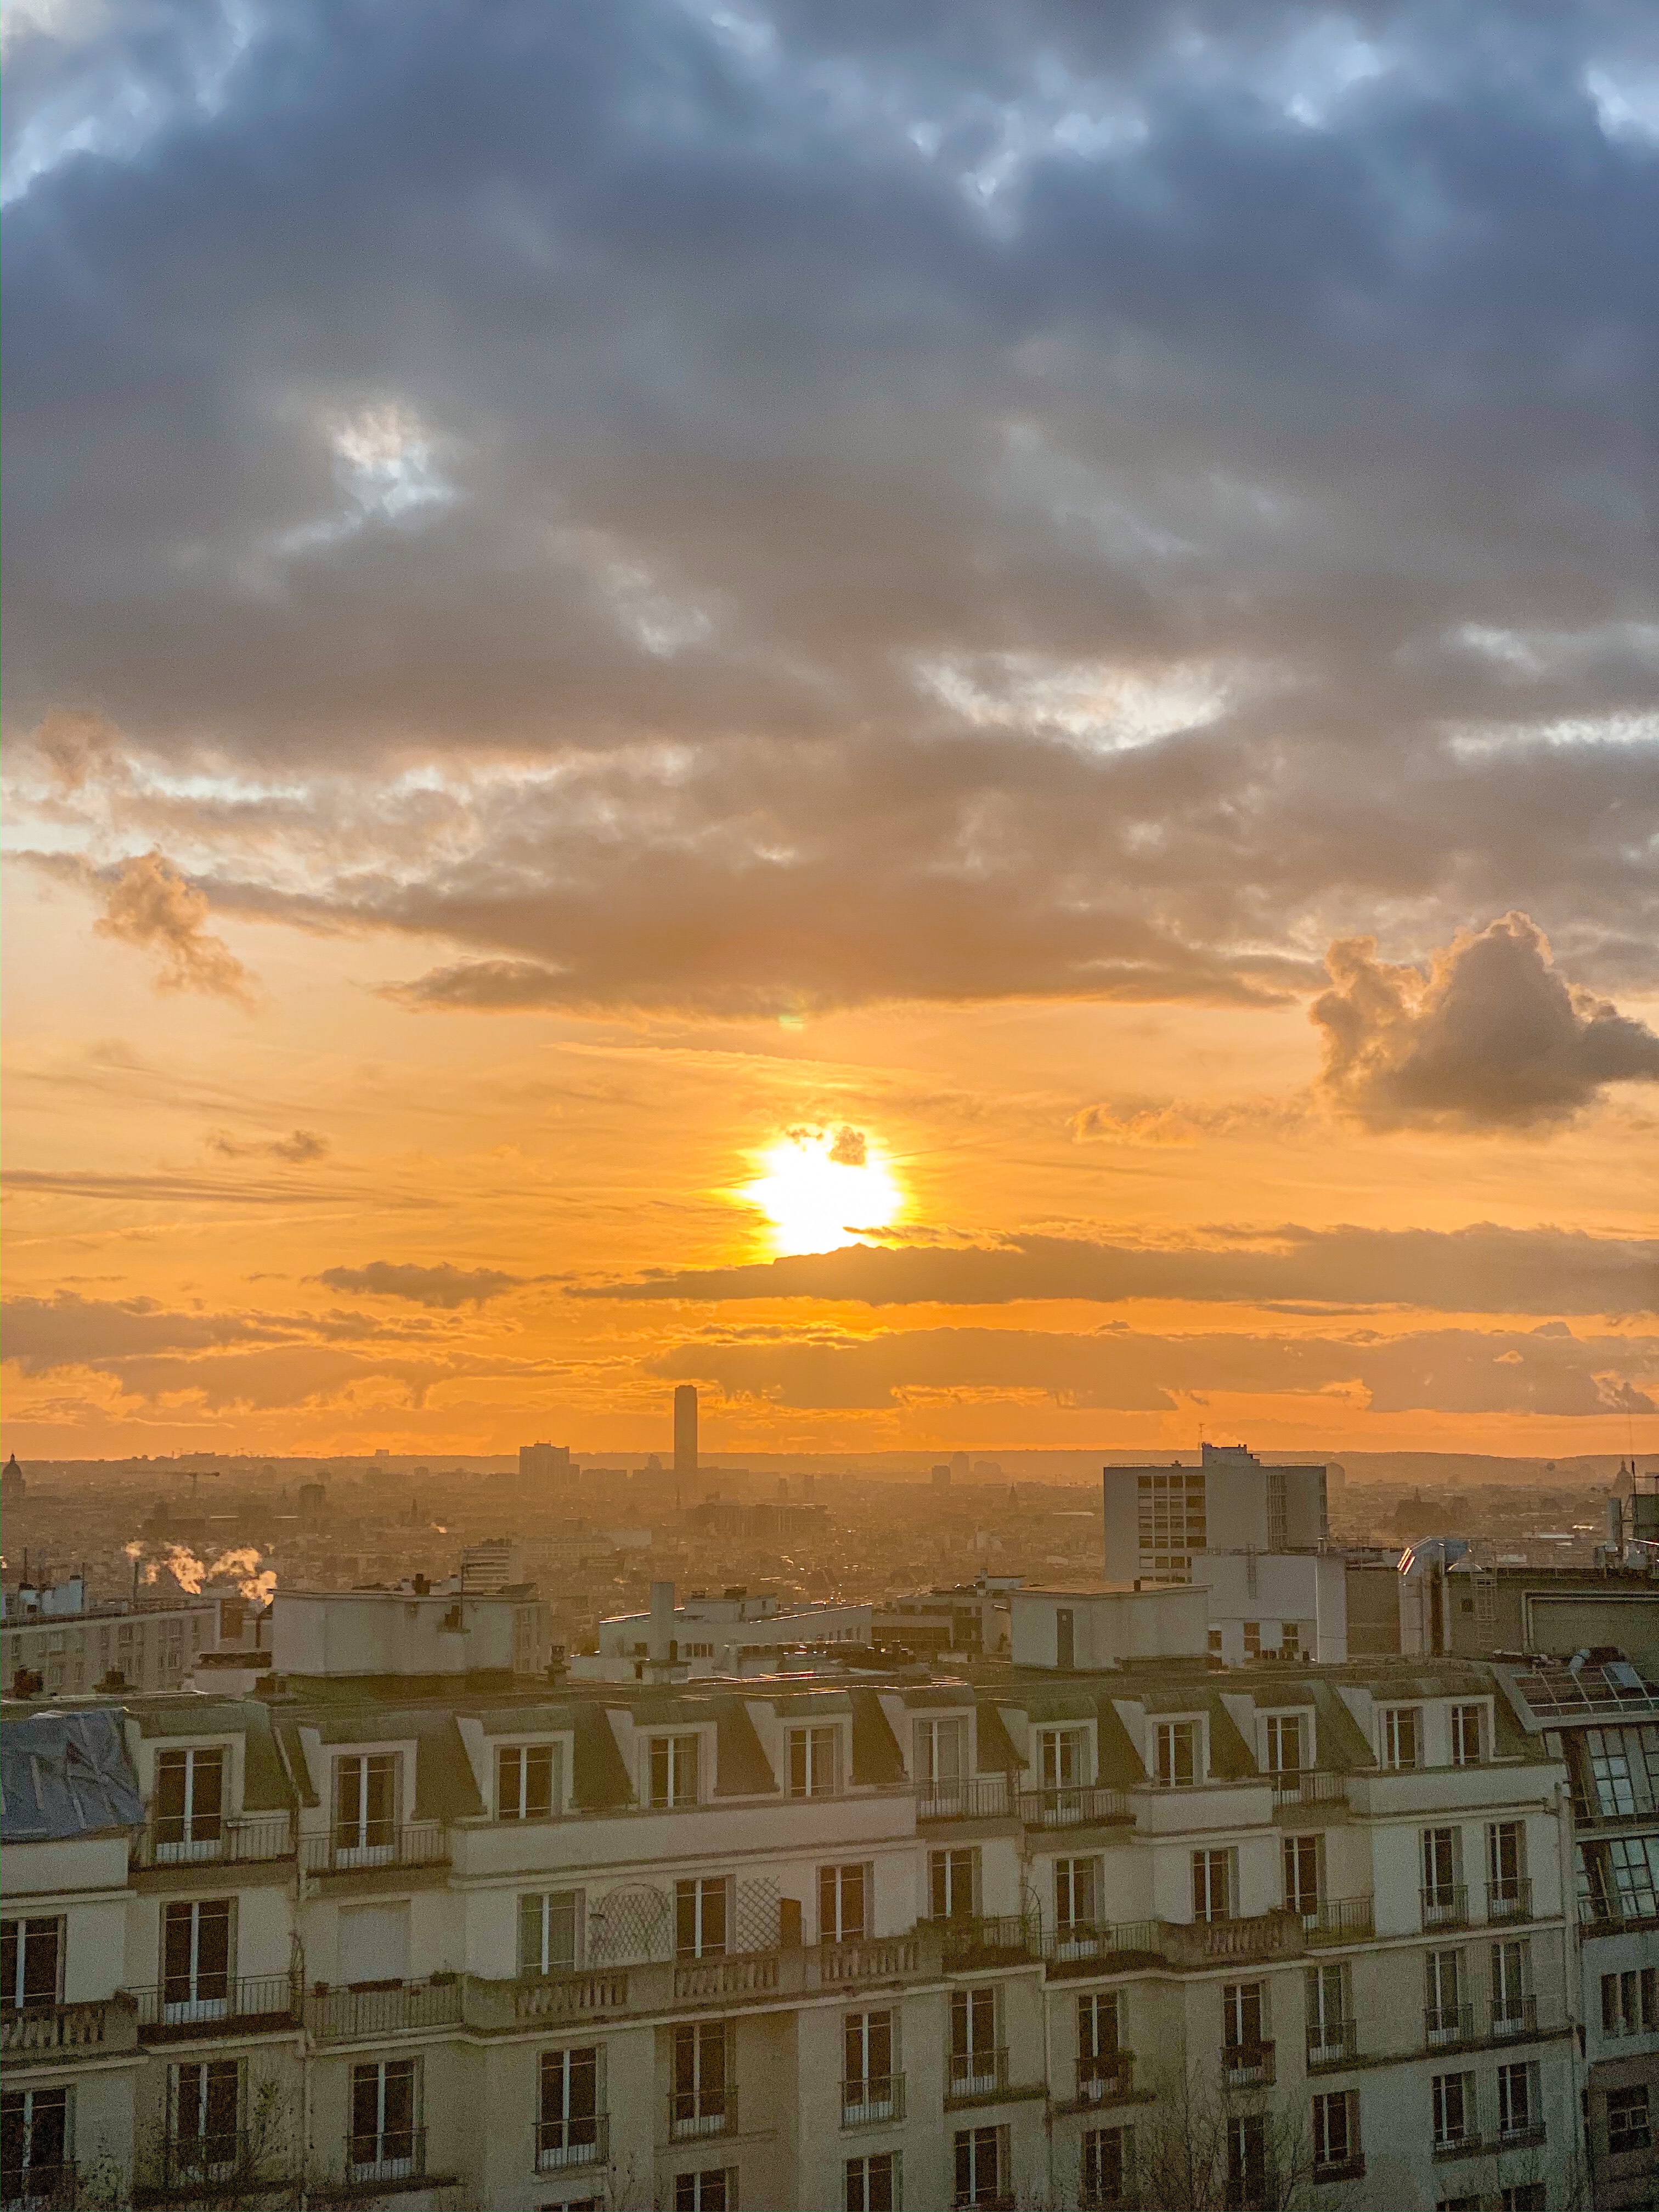 Ambassadrice Côte d’Azur France, rencontre d’amies sur Instagram, WE à Paris